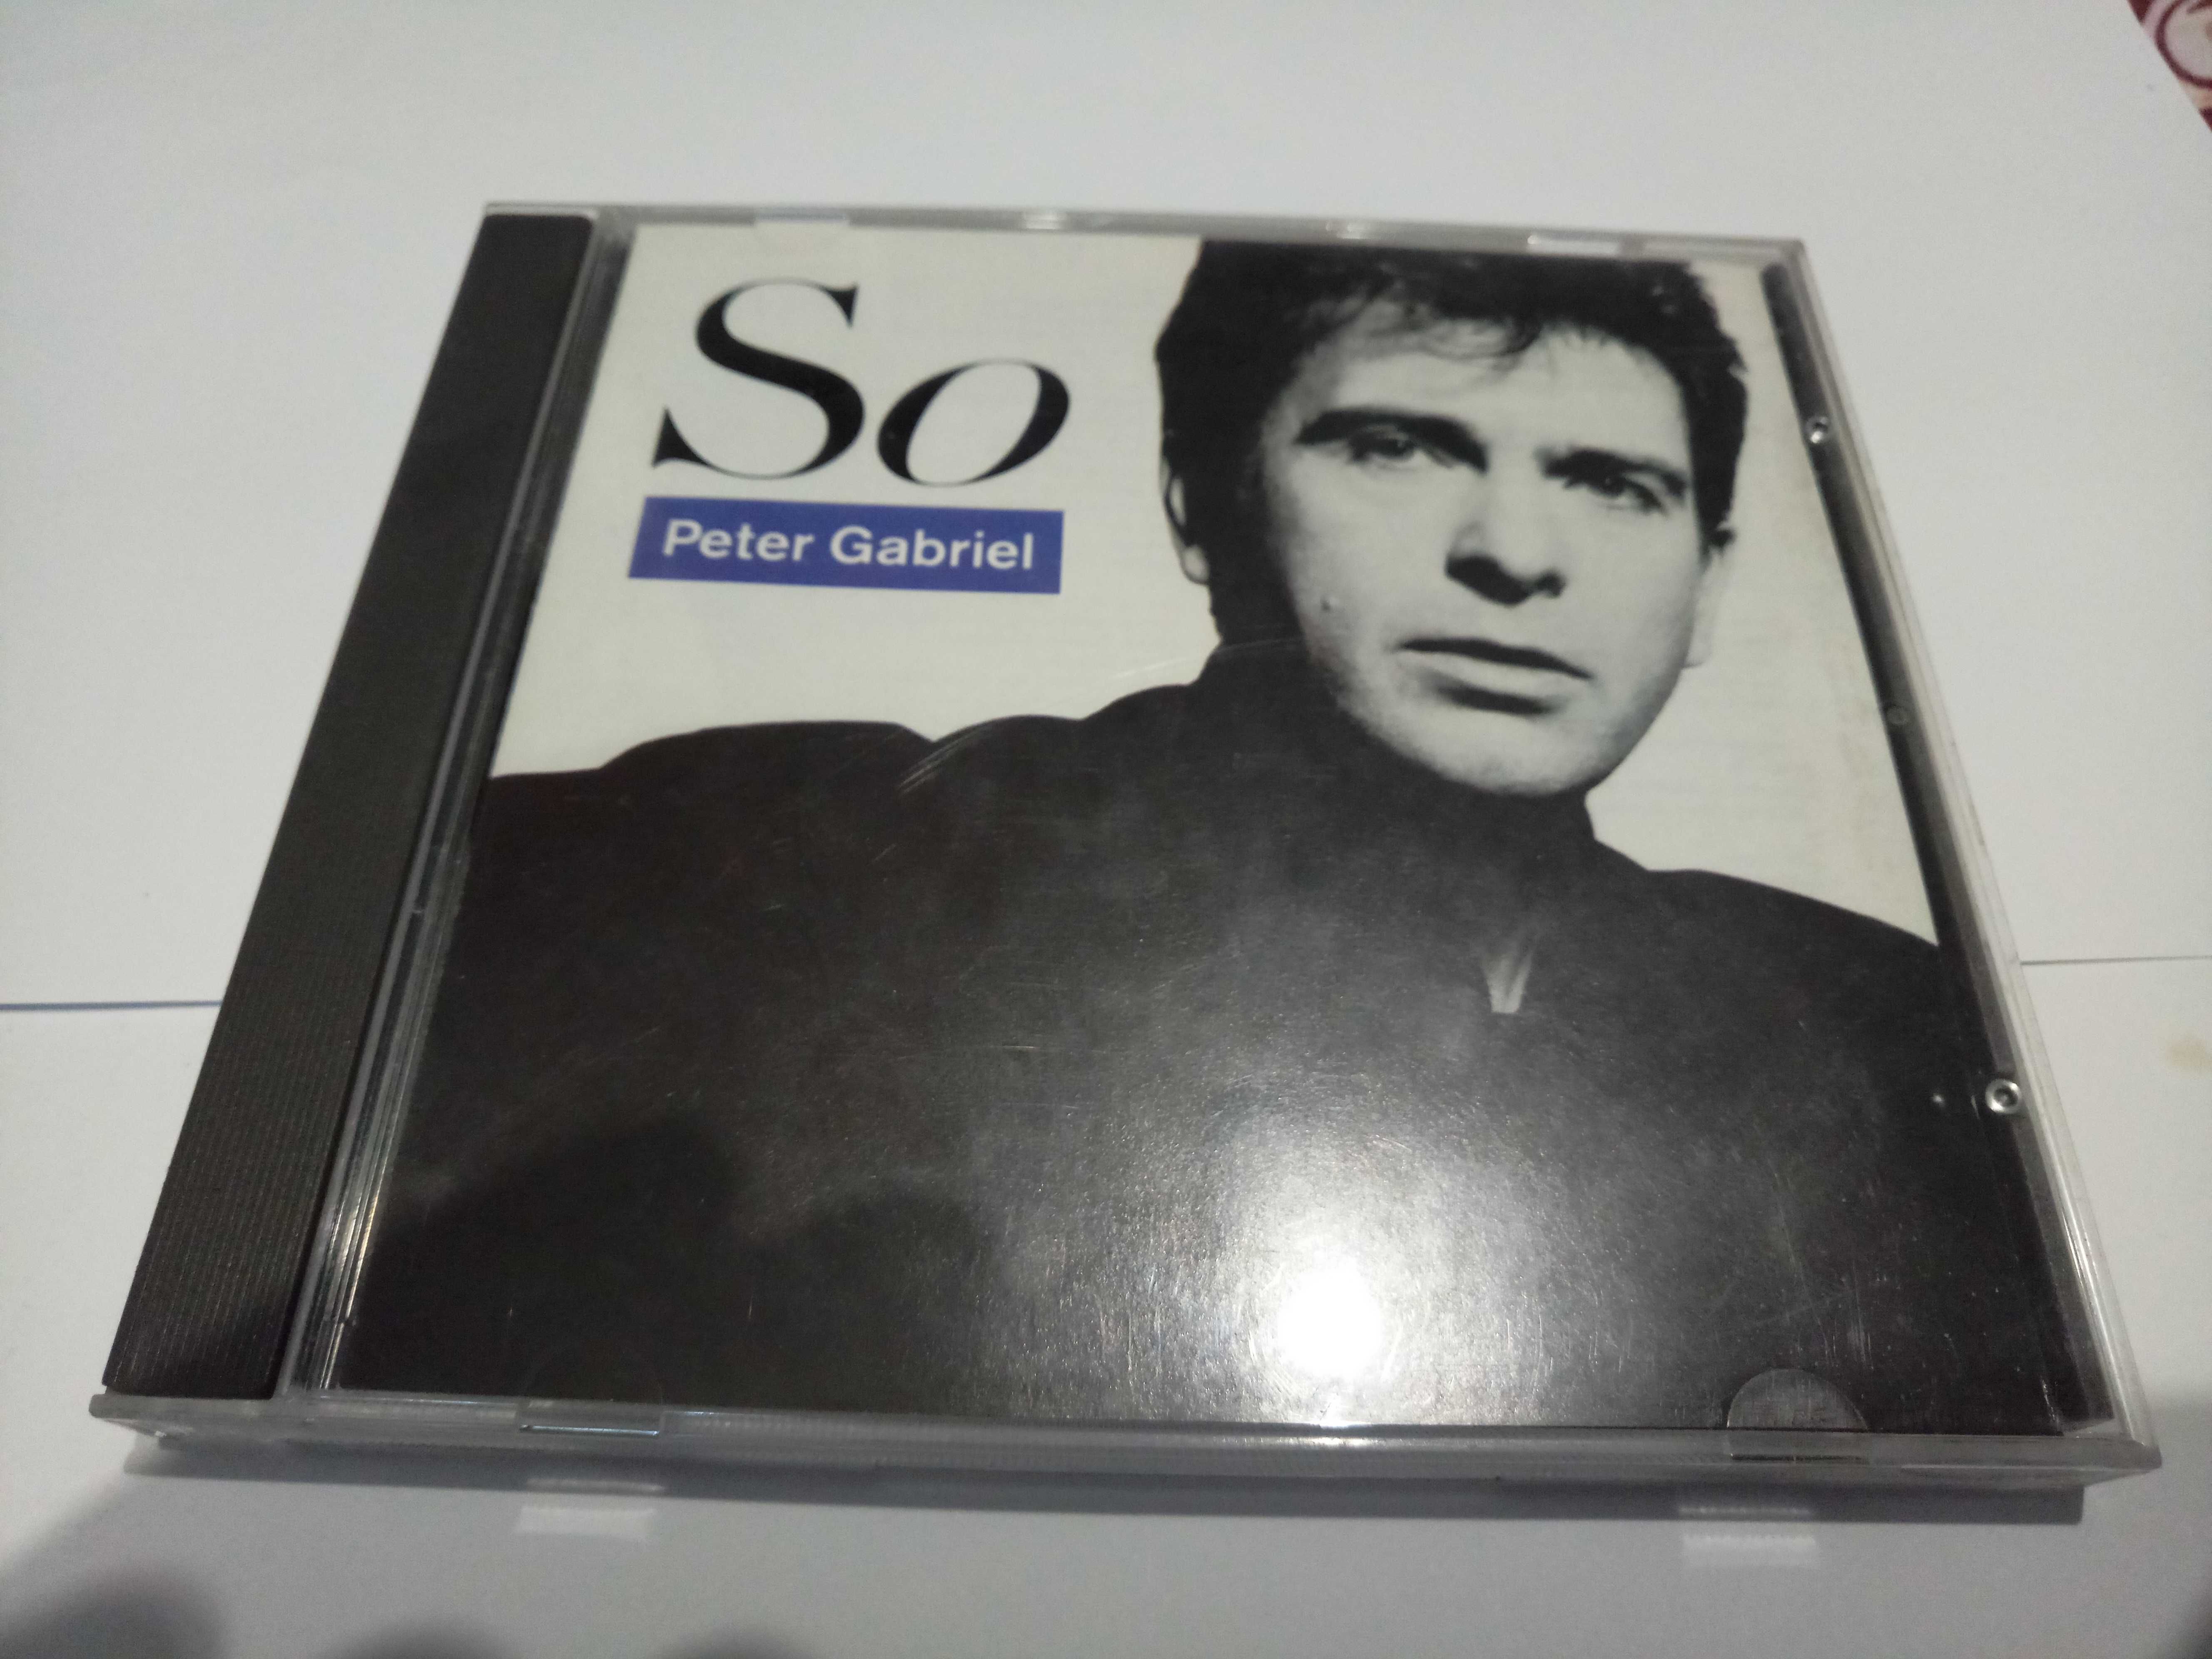 Английский cd Peter Gabriel “So”, издания Nimbus, 1986 года выпуска